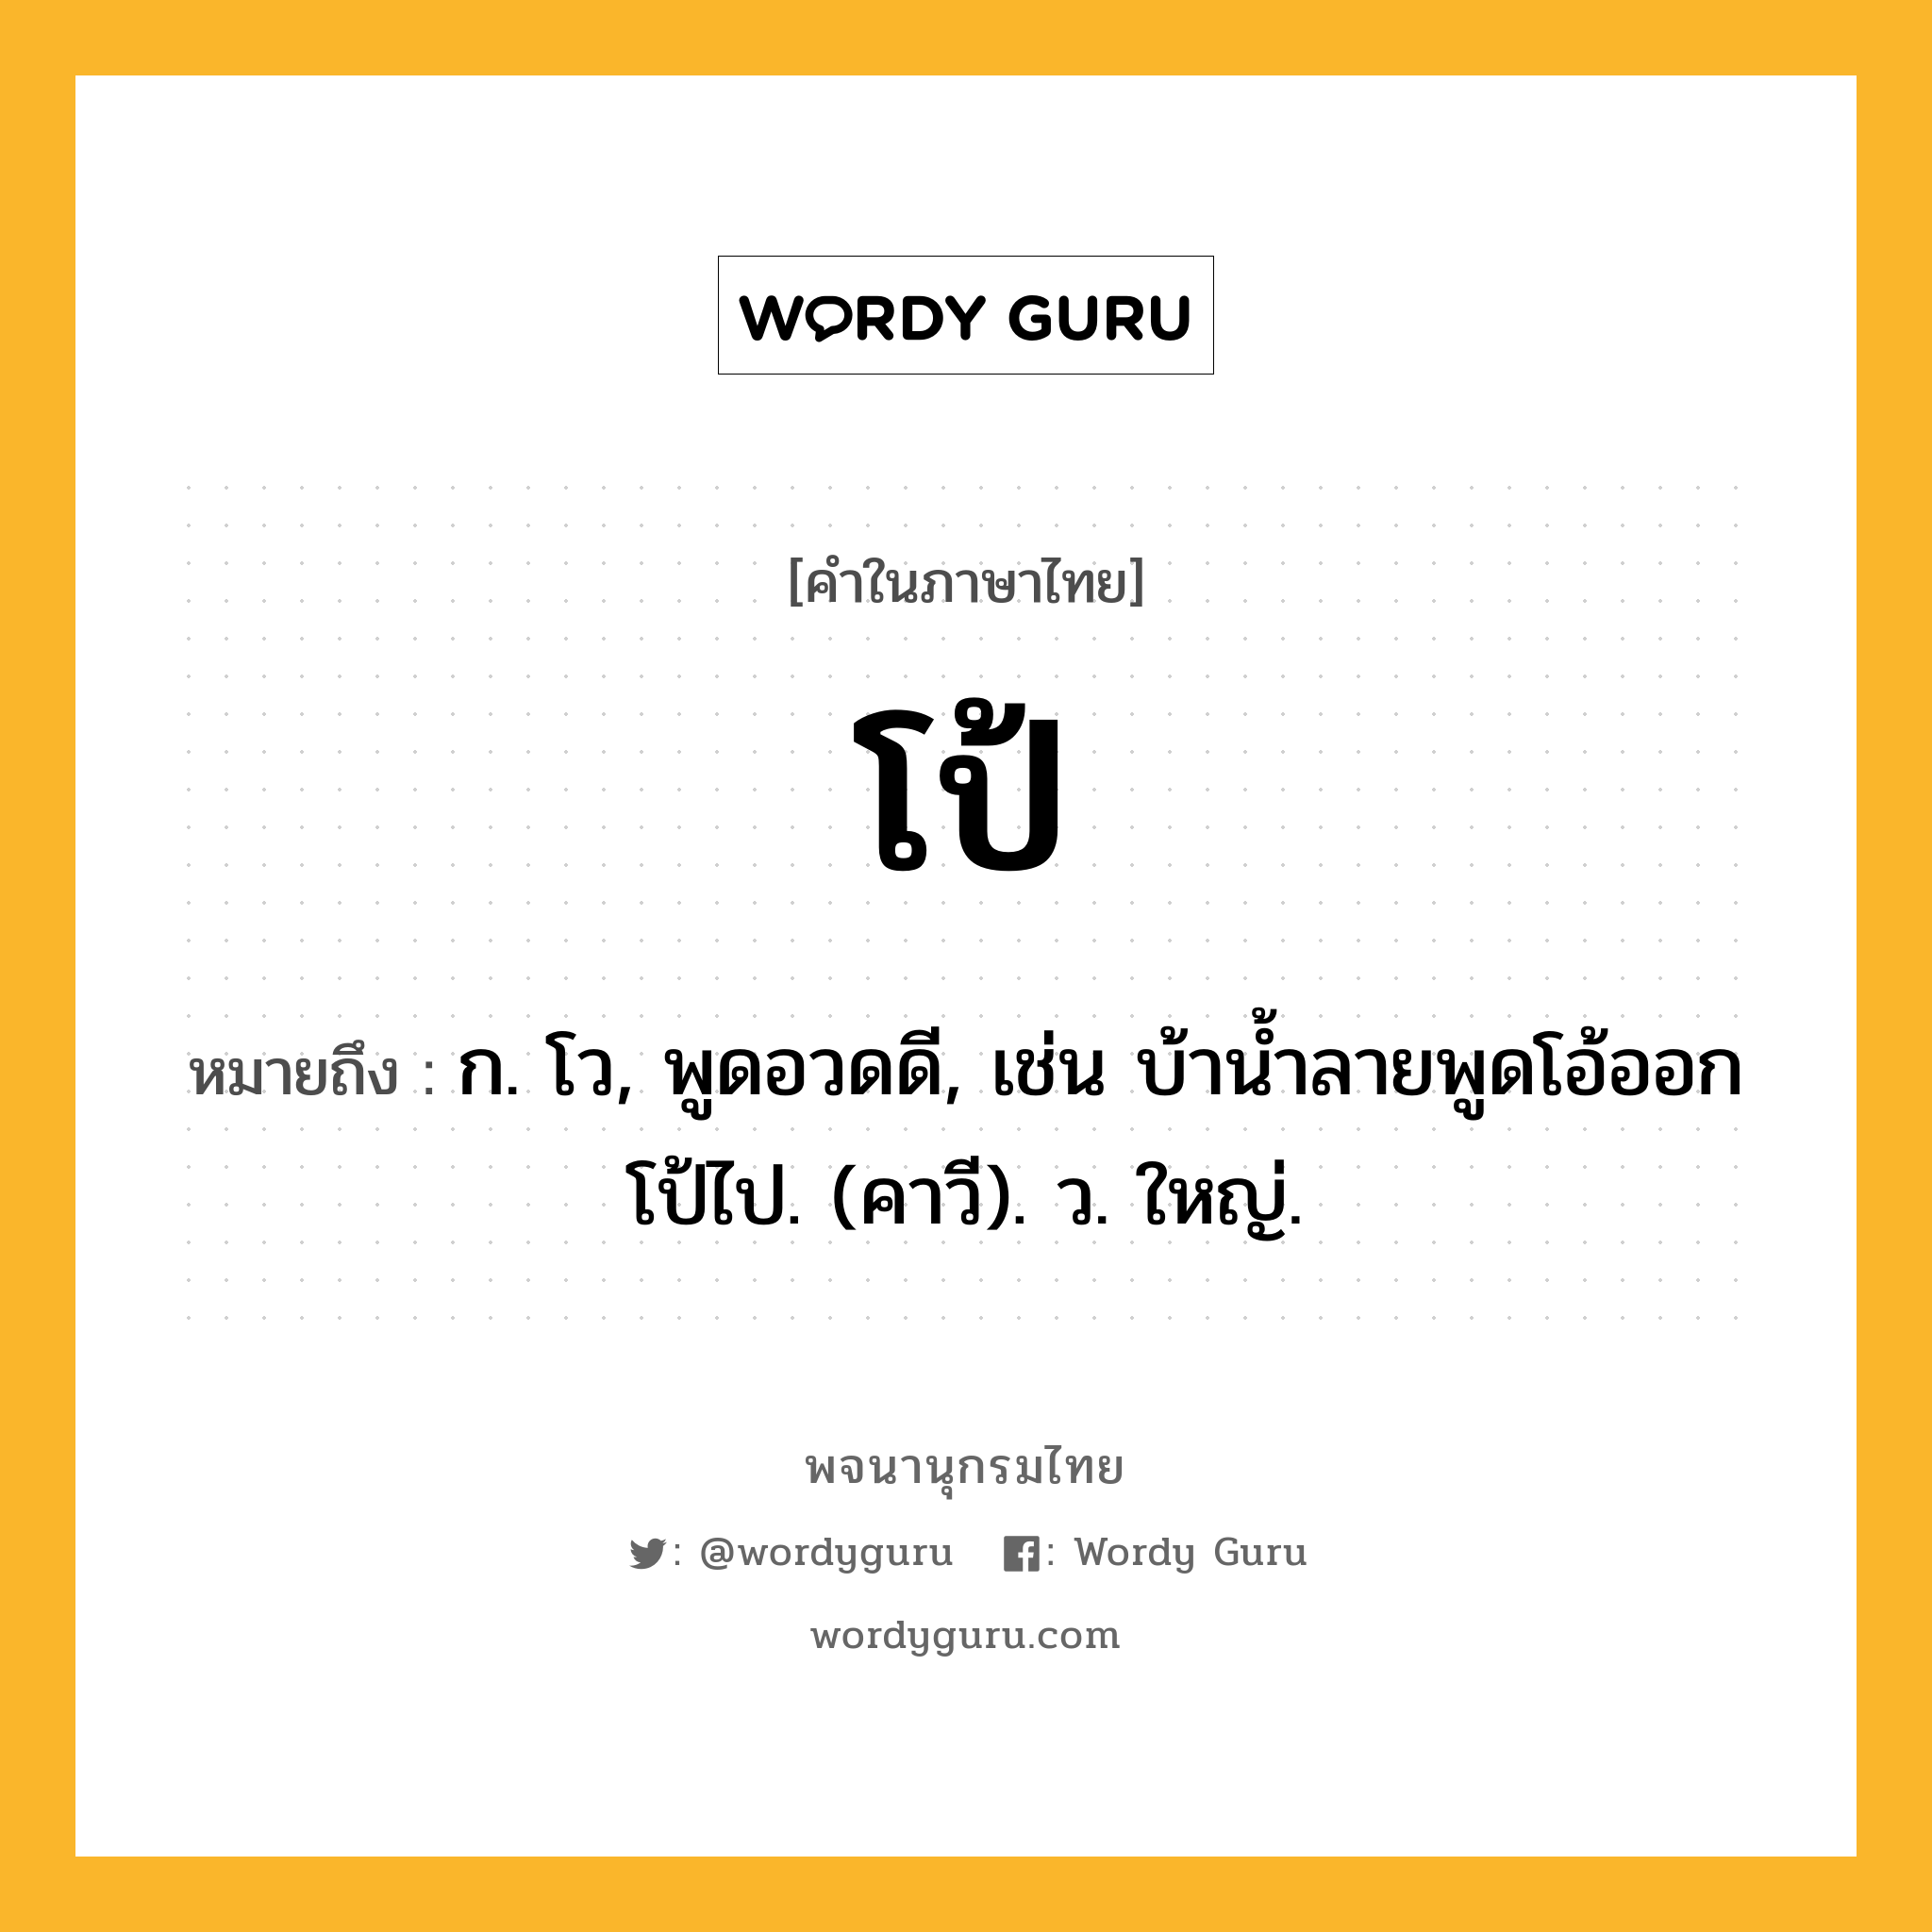 โป้ หมายถึงอะไร?, คำในภาษาไทย โป้ หมายถึง ก. โว, พูดอวดดี, เช่น บ้านํ้าลายพูดโอ้ออกโป้ไป. (คาวี). ว. ใหญ่.